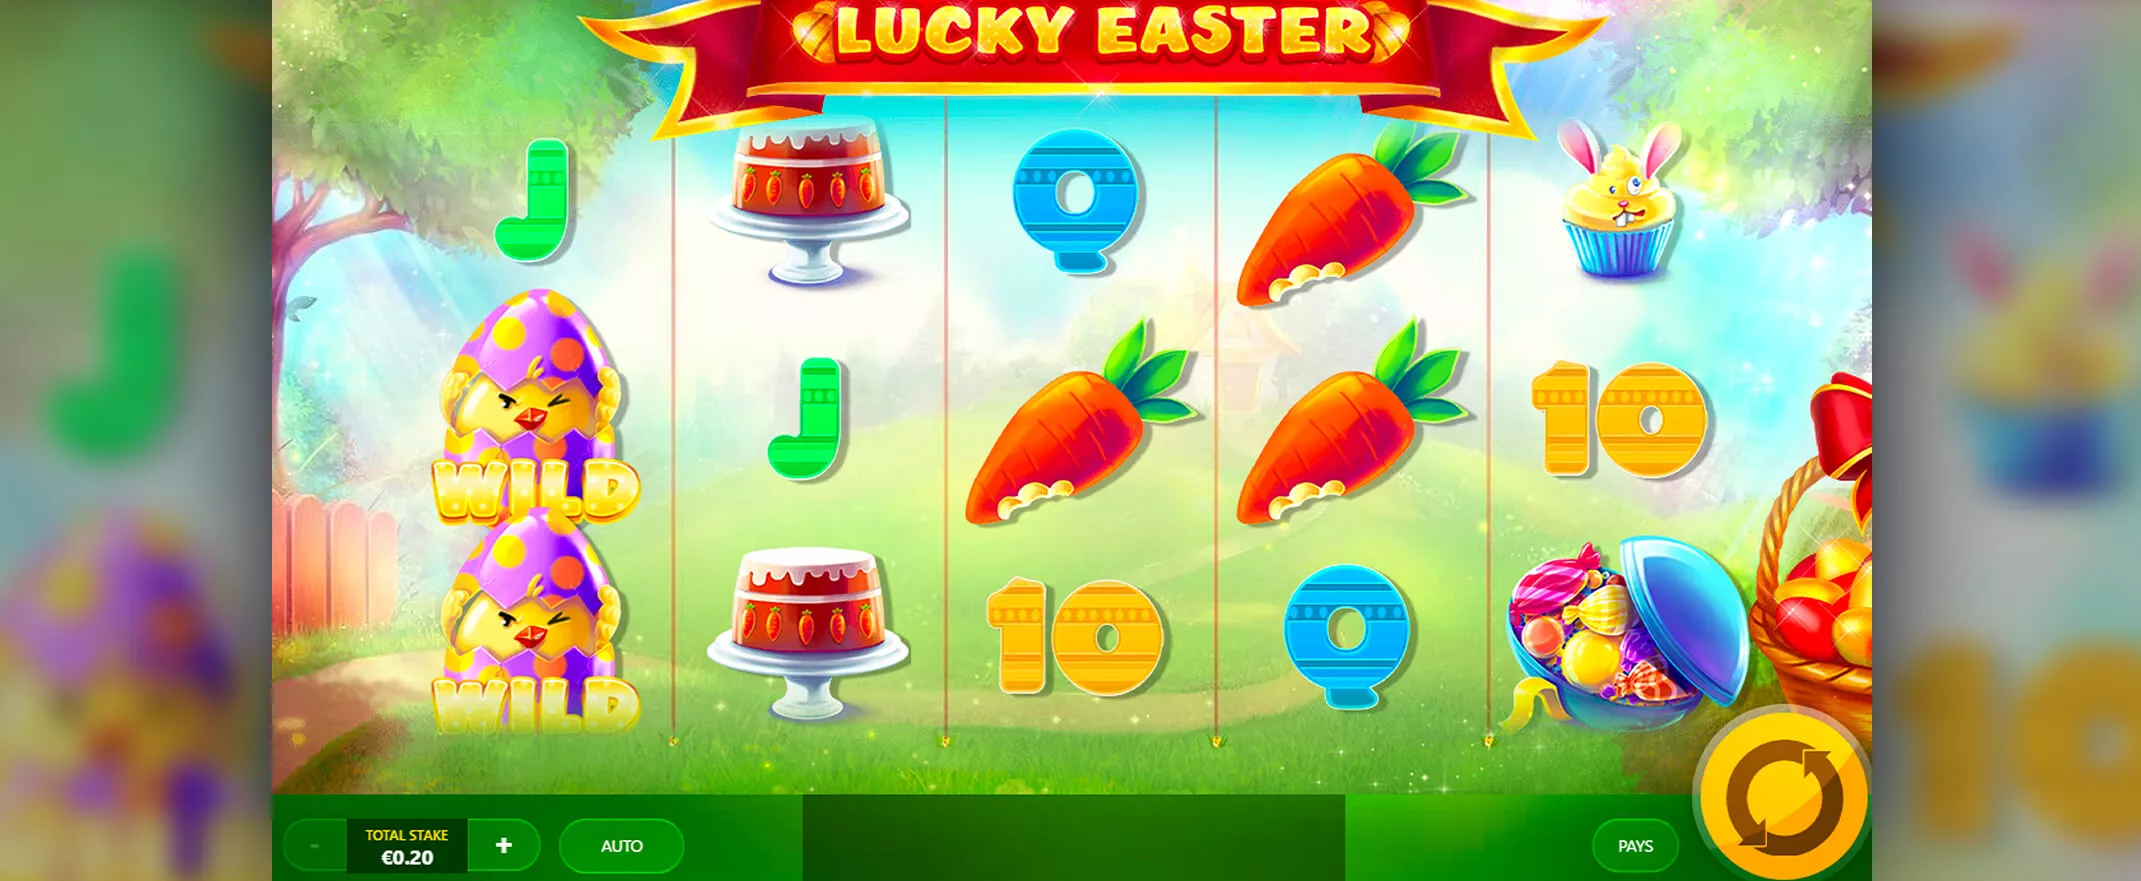 Lucky Easter spielautomat